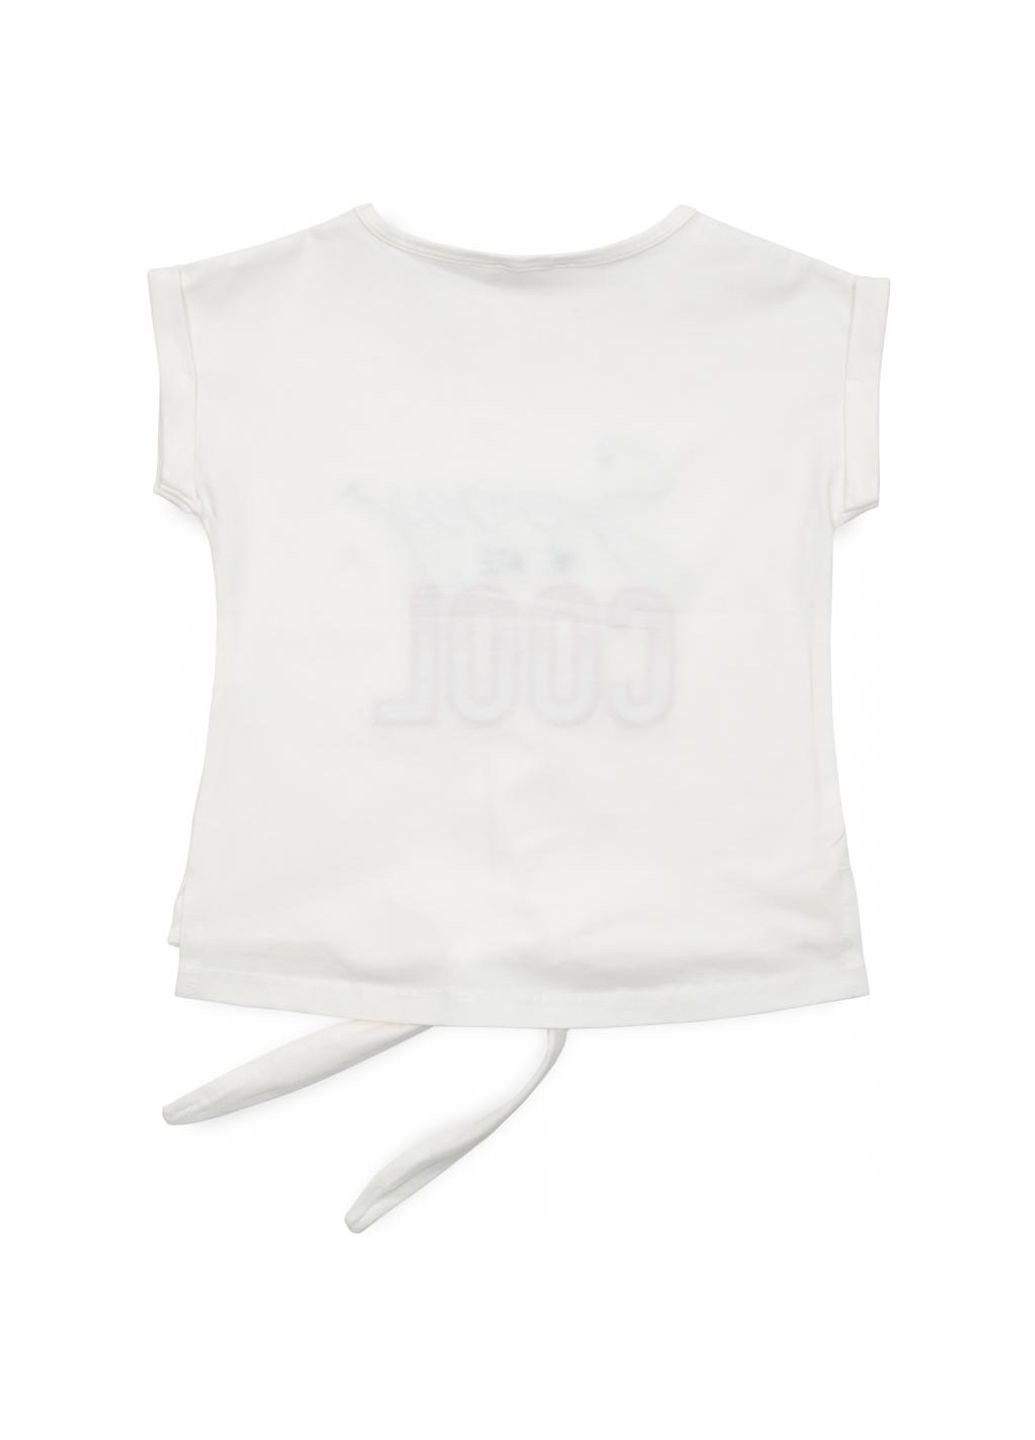 Комбинированная демисезонная футболка детская "sorry we are cool" (14281-140g-cream) Breeze